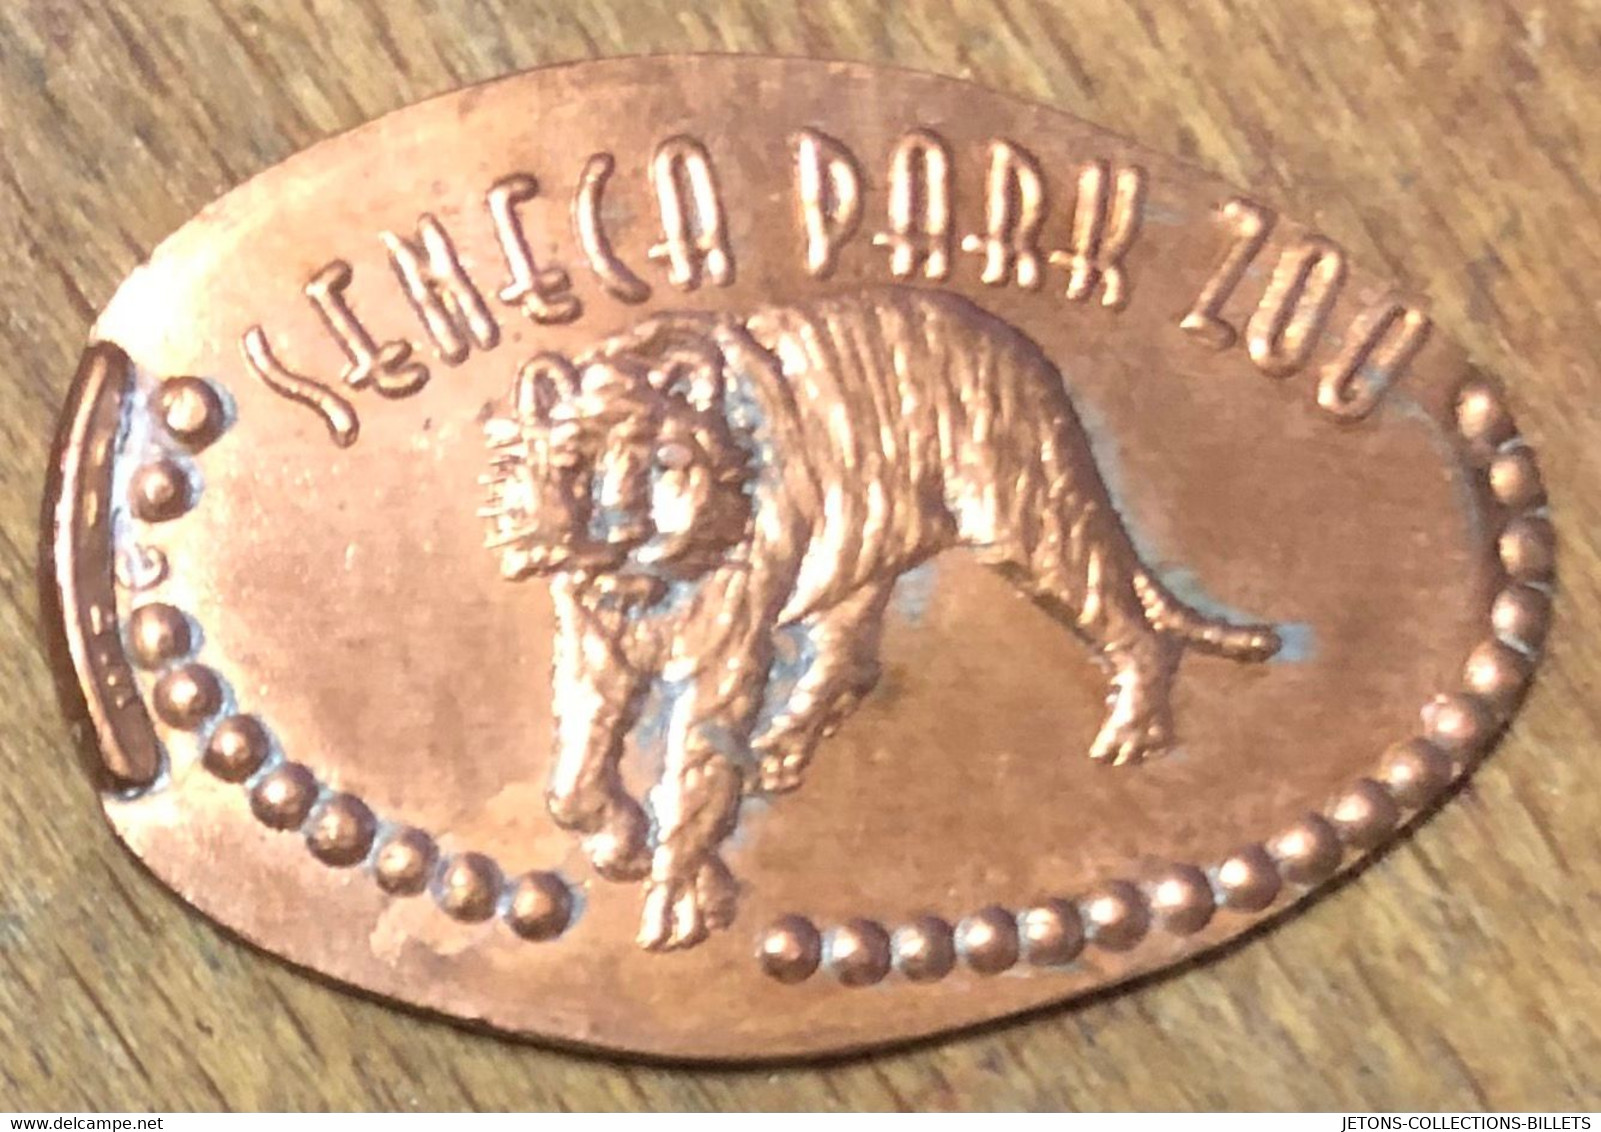 ÉTATS-UNIS USA SENECA PARK ZOO TIGRE PIÈCE ÉCRASÉE PENNY ELONGATED COIN MEDAILLE TOURISTIQUE MEDALS TOKENS - Monete Allungate (penny Souvenirs)